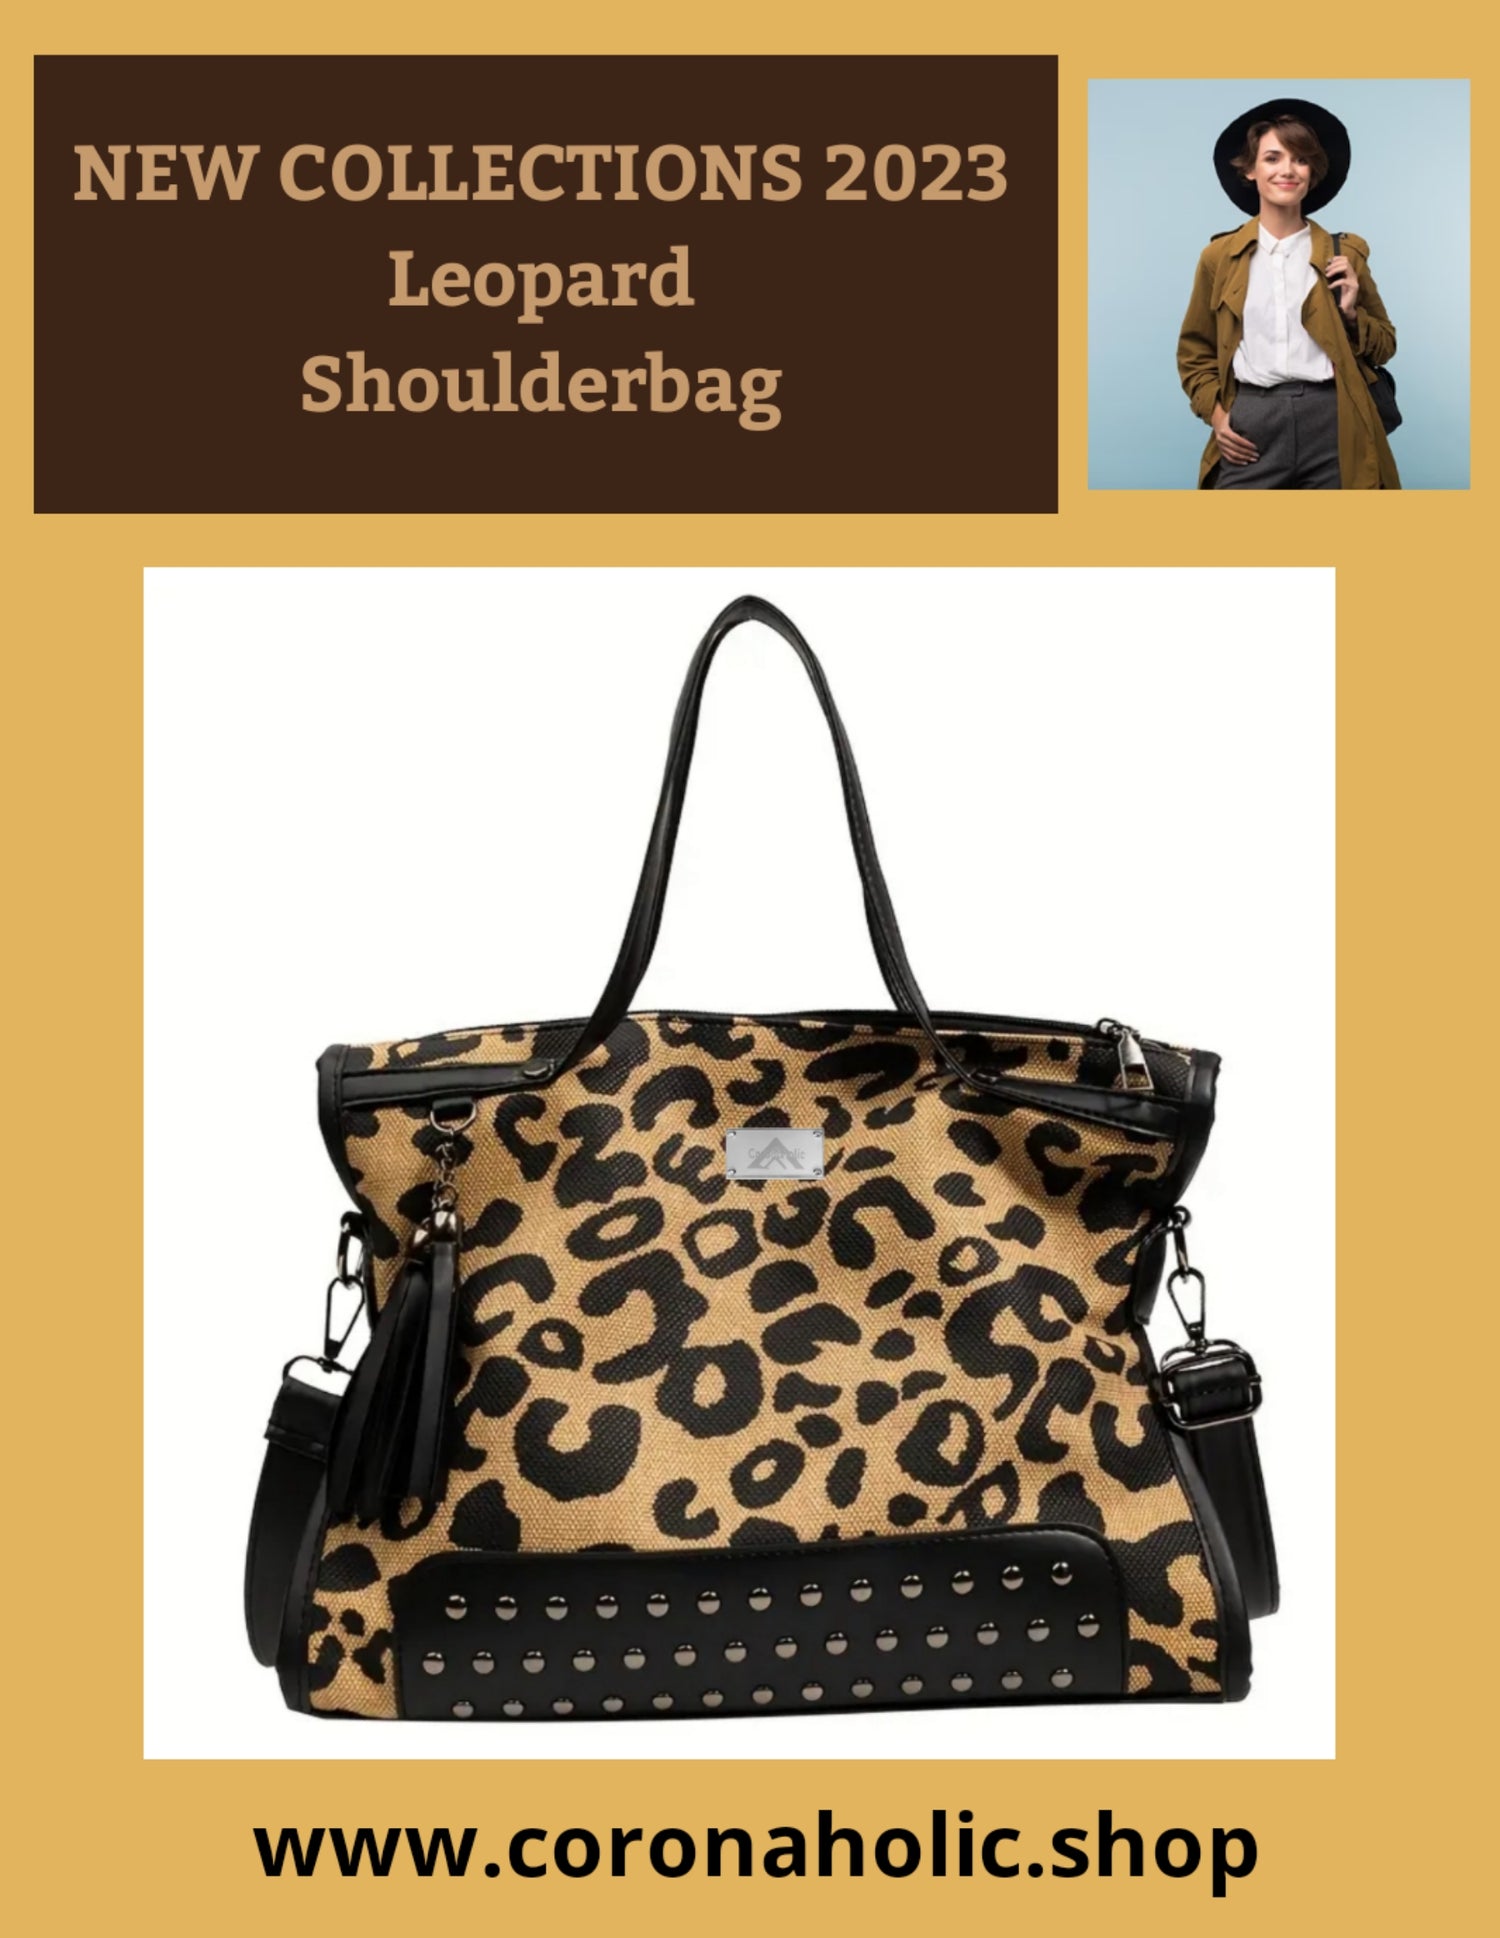 "Leopard Shoulderbag"